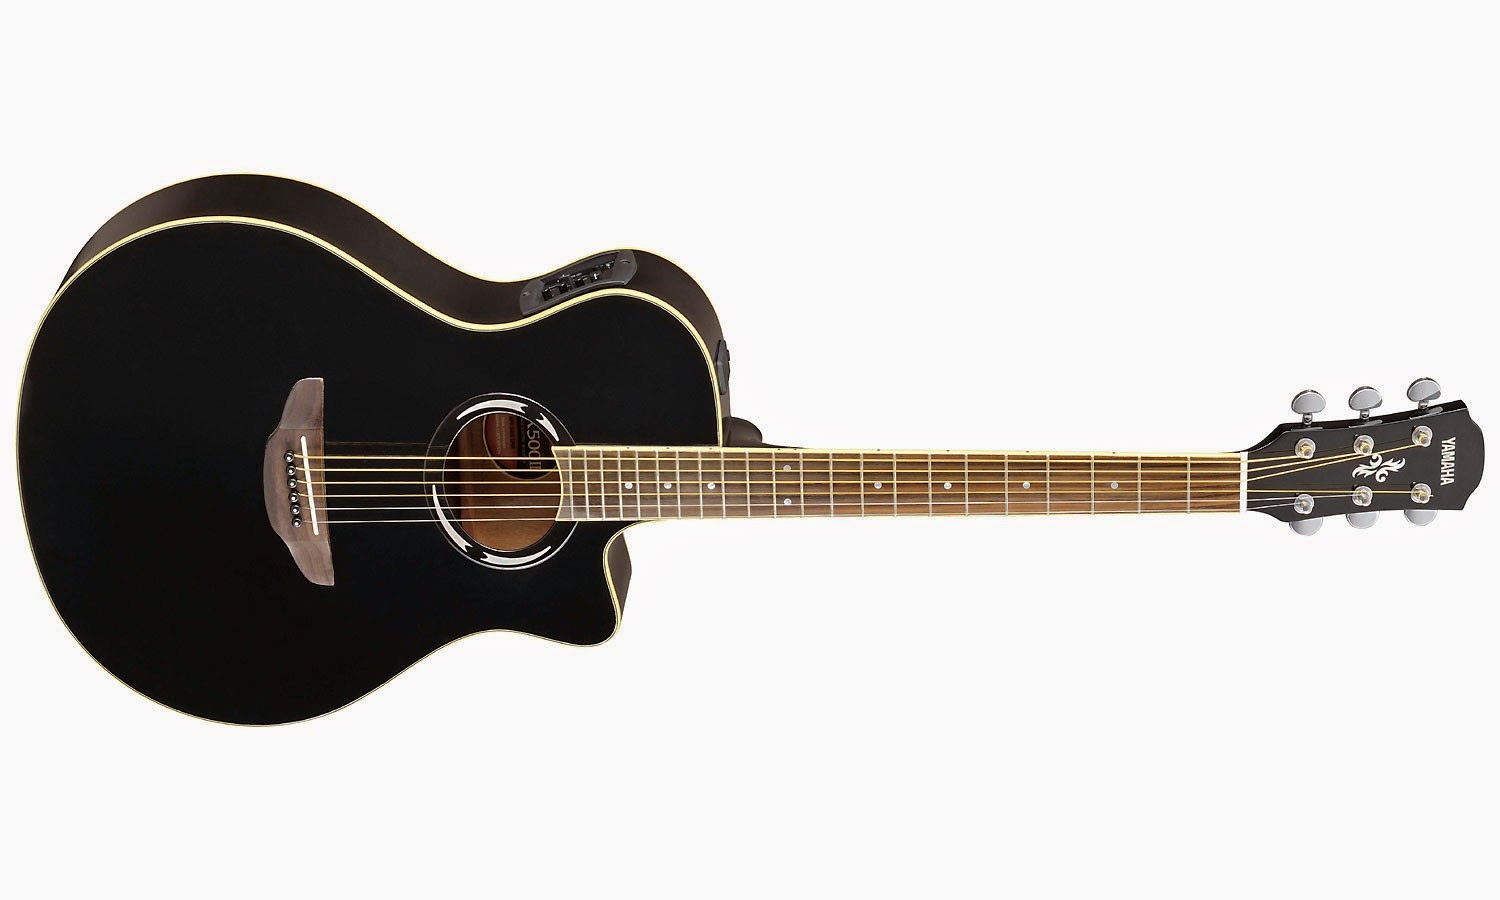 Main Gitar: Harga Gitar Yamaha Akustik Dan Spesifikasinya 